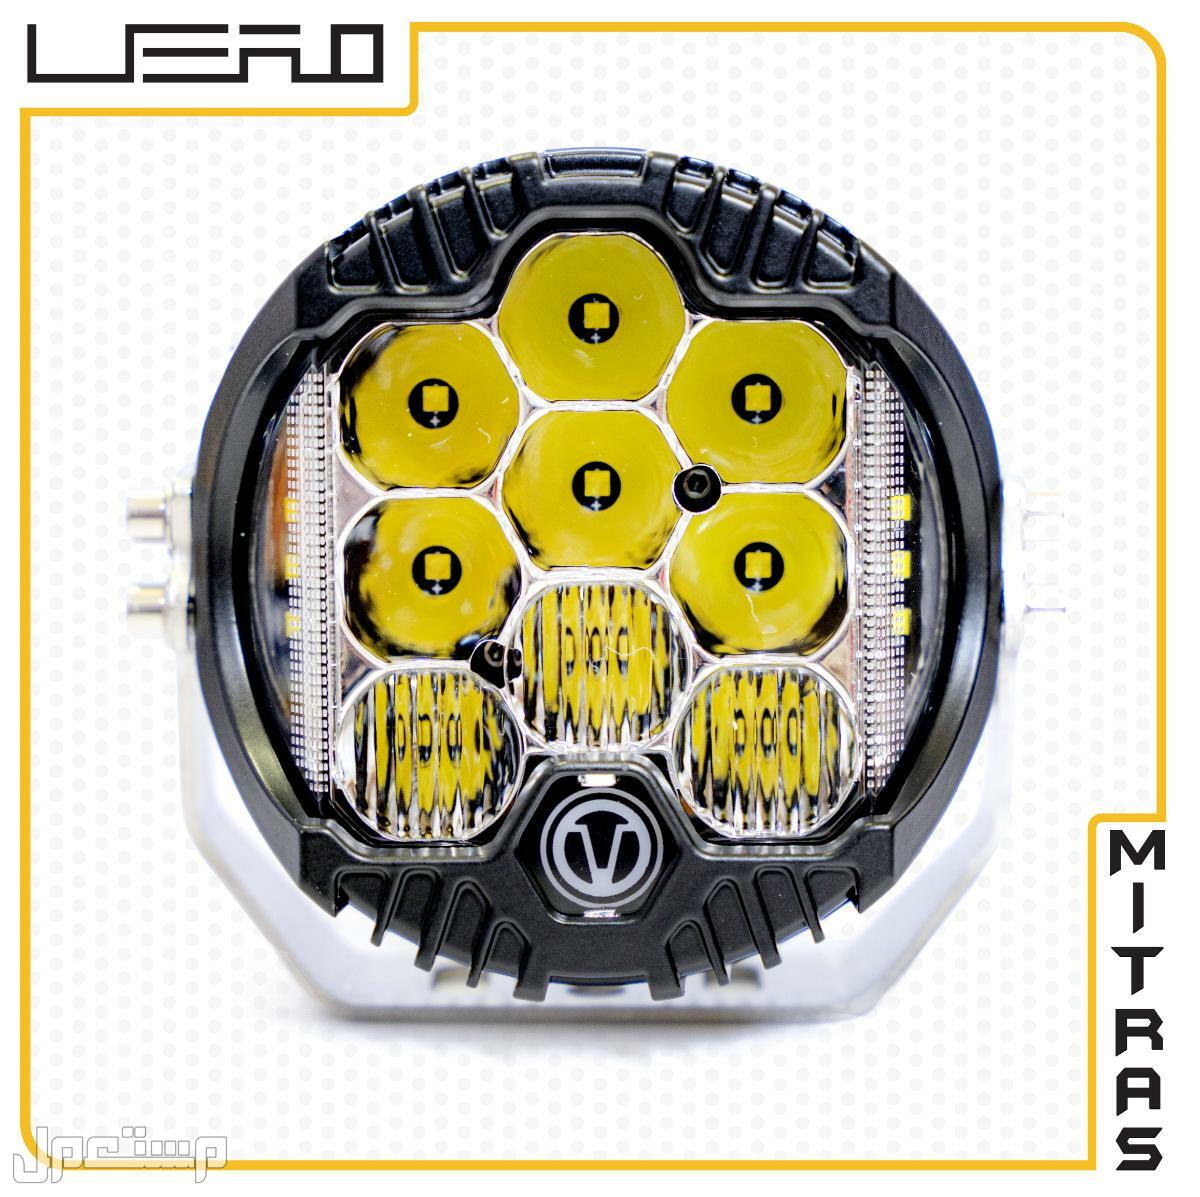 كشافات  LEDدائرية انارة بيضاء بالإضافة لإنارة باللون الأصفر (سكن) 5 انش